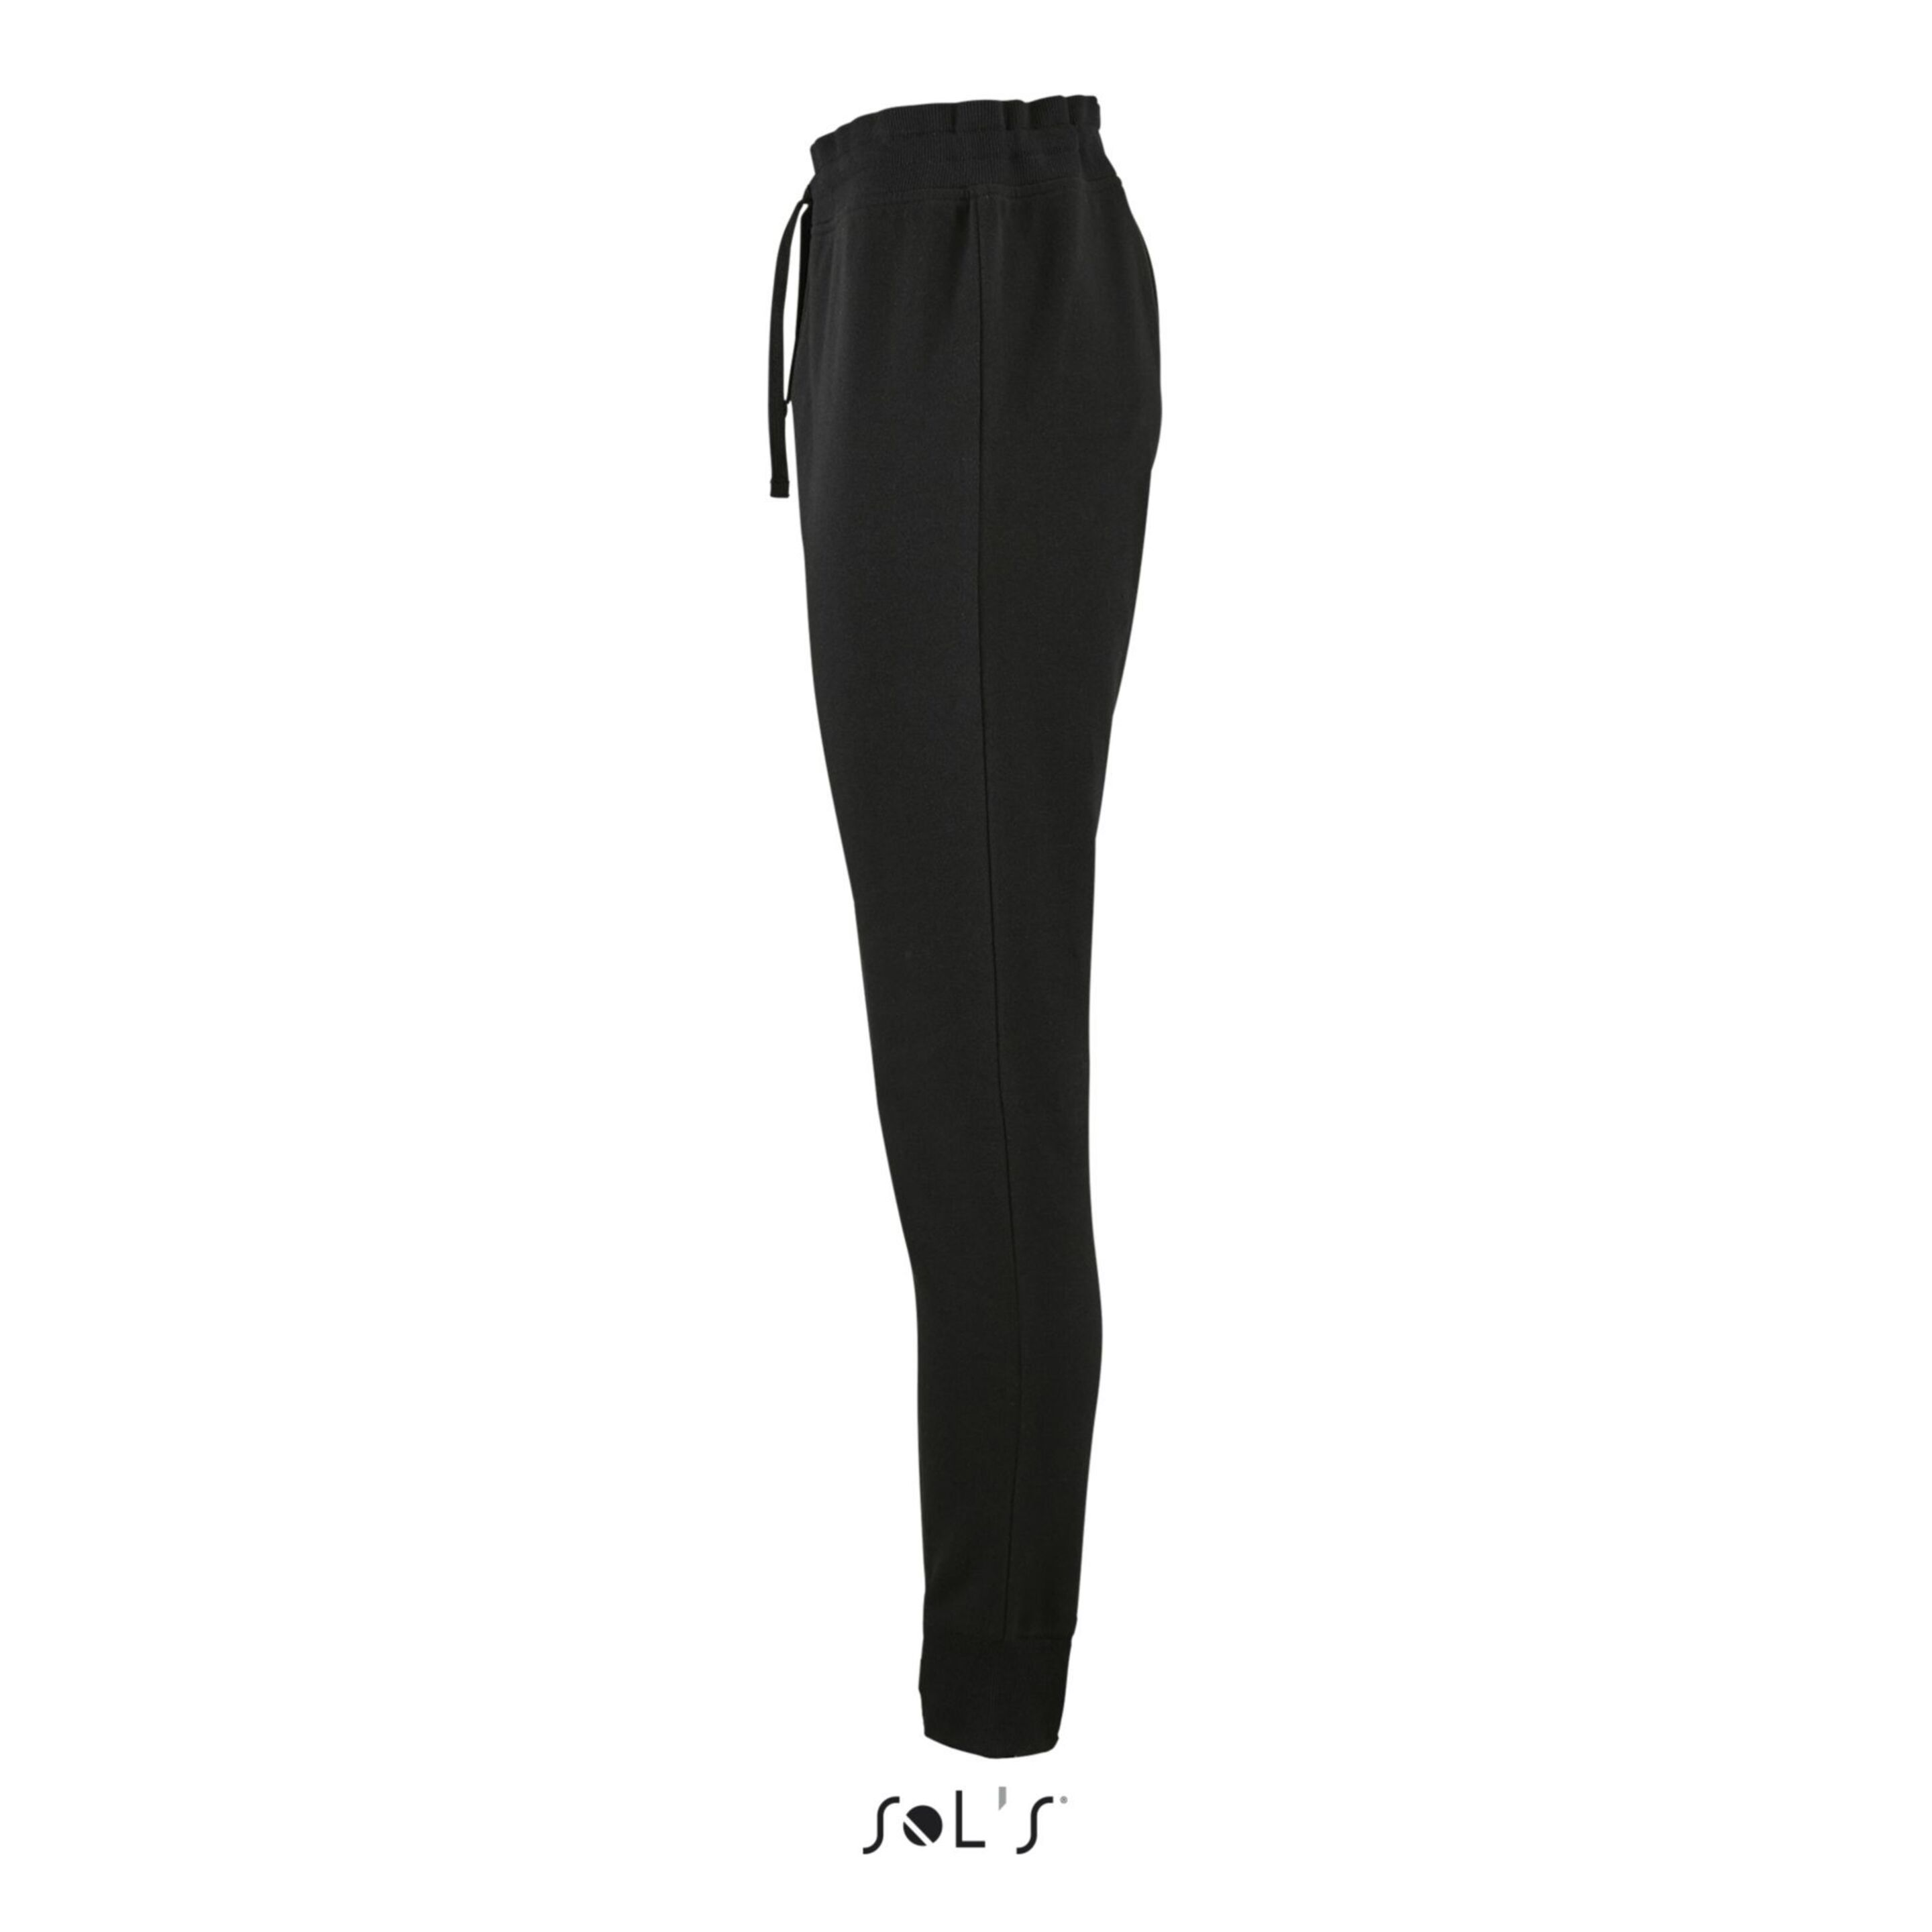 Pantalones De Jogging Sols Jake - Negro - Casual Mujer  MKP